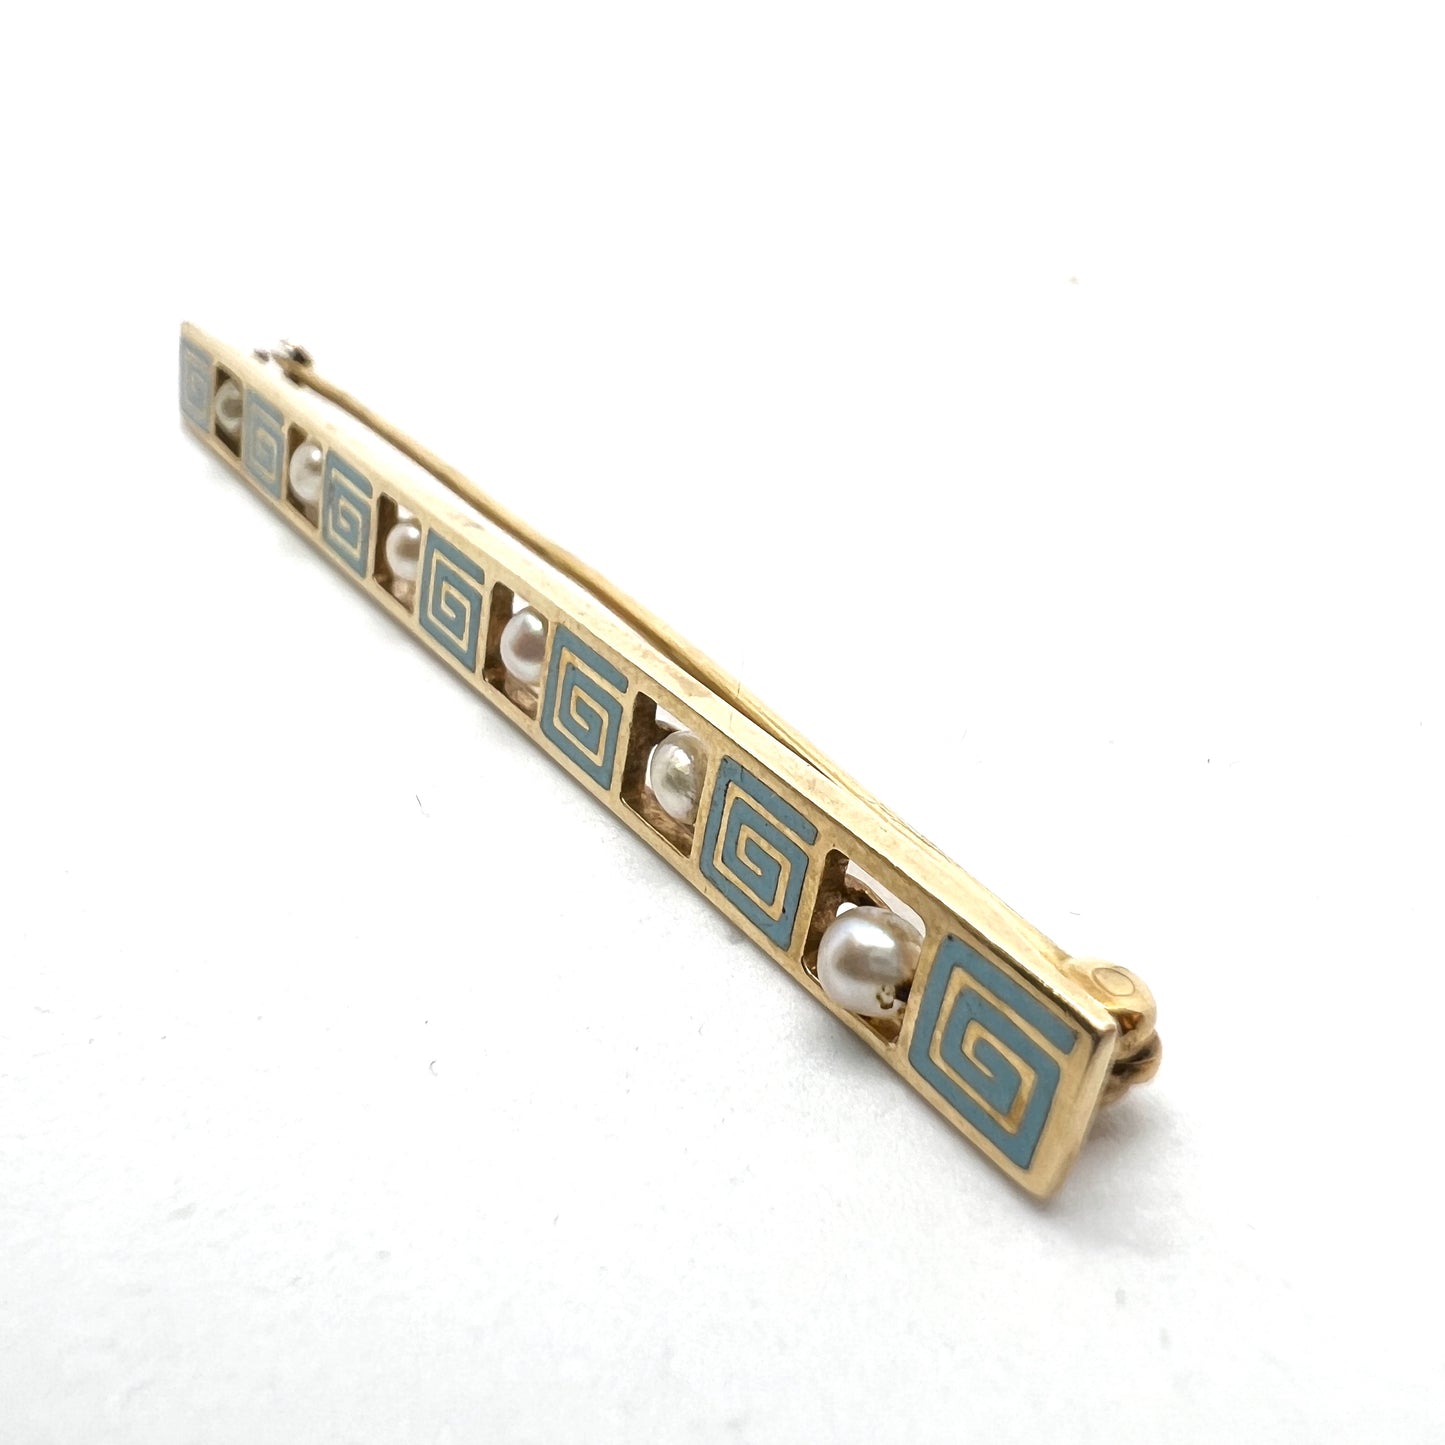 Early 1900s 14k Gold Enamel Pearl Bar Pin. Pat'd 1909